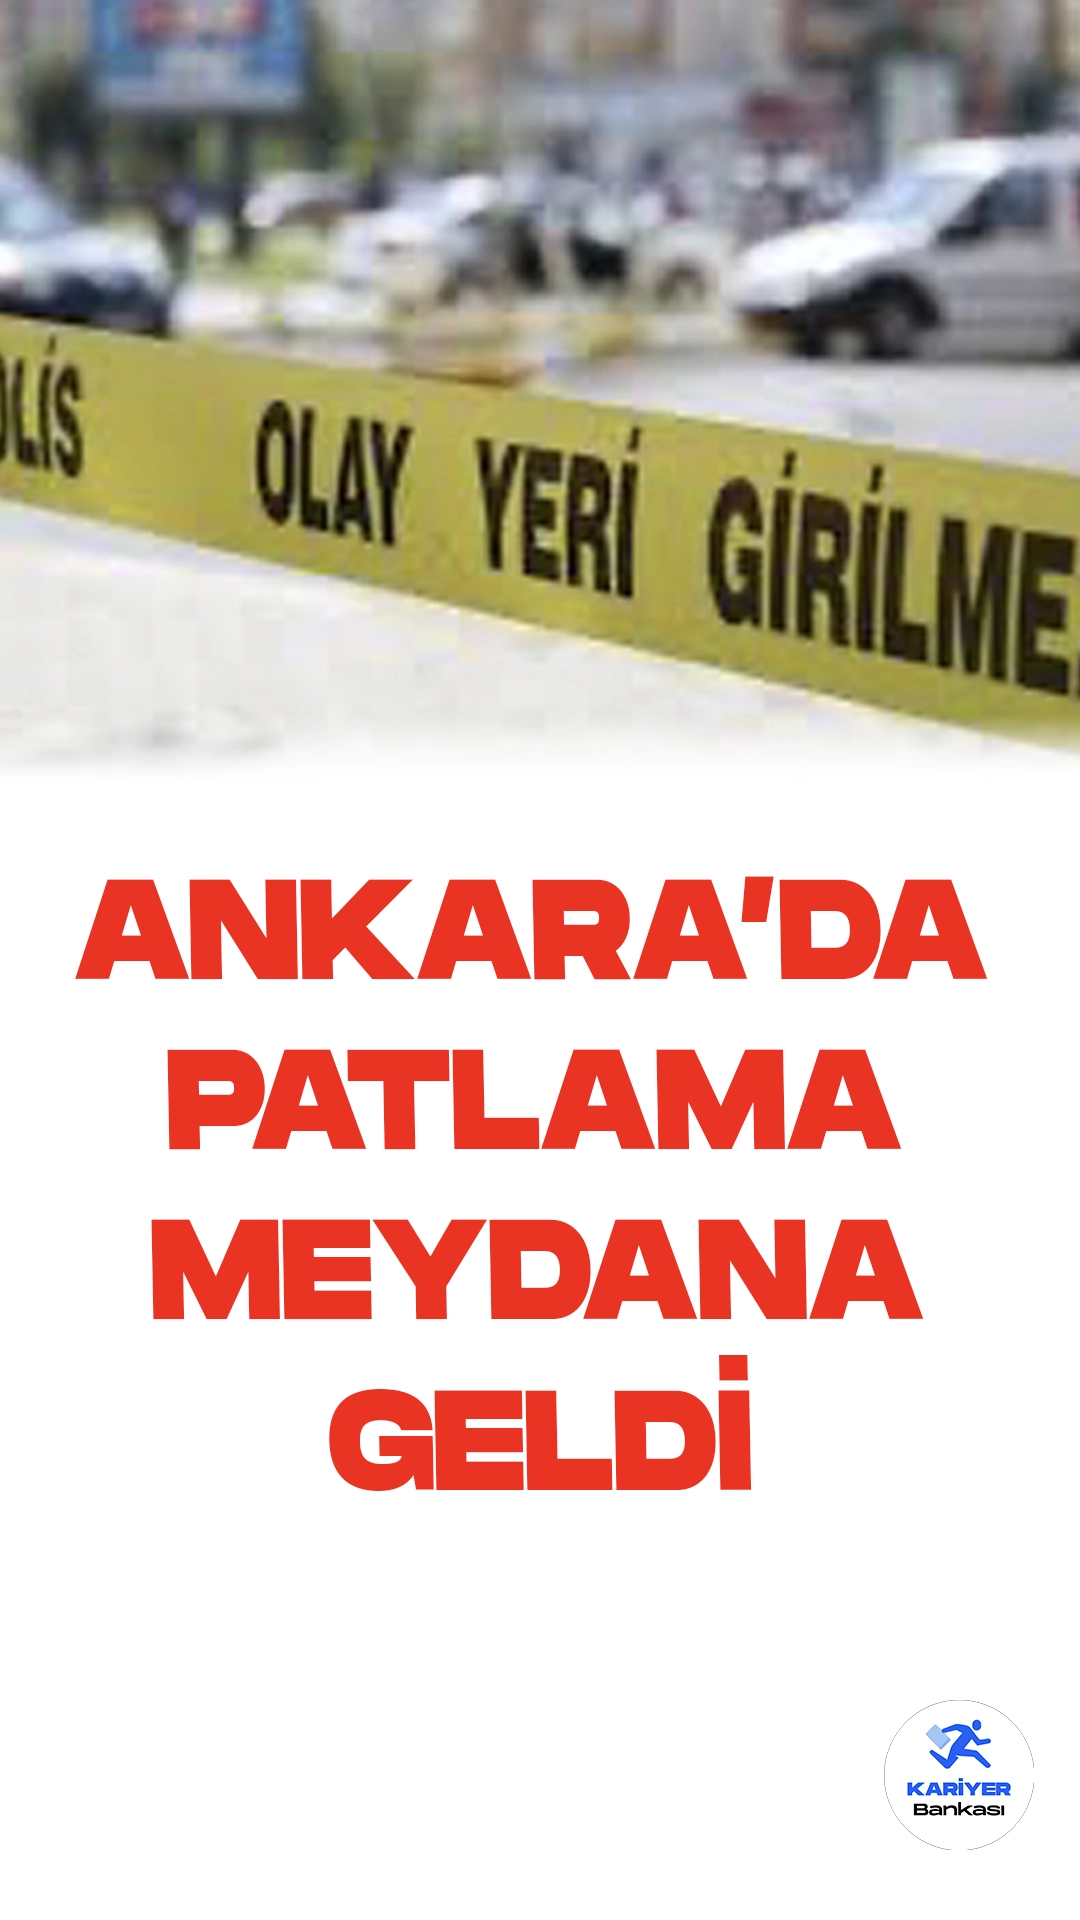 Ankara Kızılay'da Paylama Meydana Geldi. İçişleri Bakanı Ali Yerlikaya sosyal medya hesabı üzerinden İçişleri Bakanlığının Emniyet Genel Müdürlüğü giriş kapısı önünde 2 teröristin bombalı saldırı eyleminde bulunduğunu açıkladı.